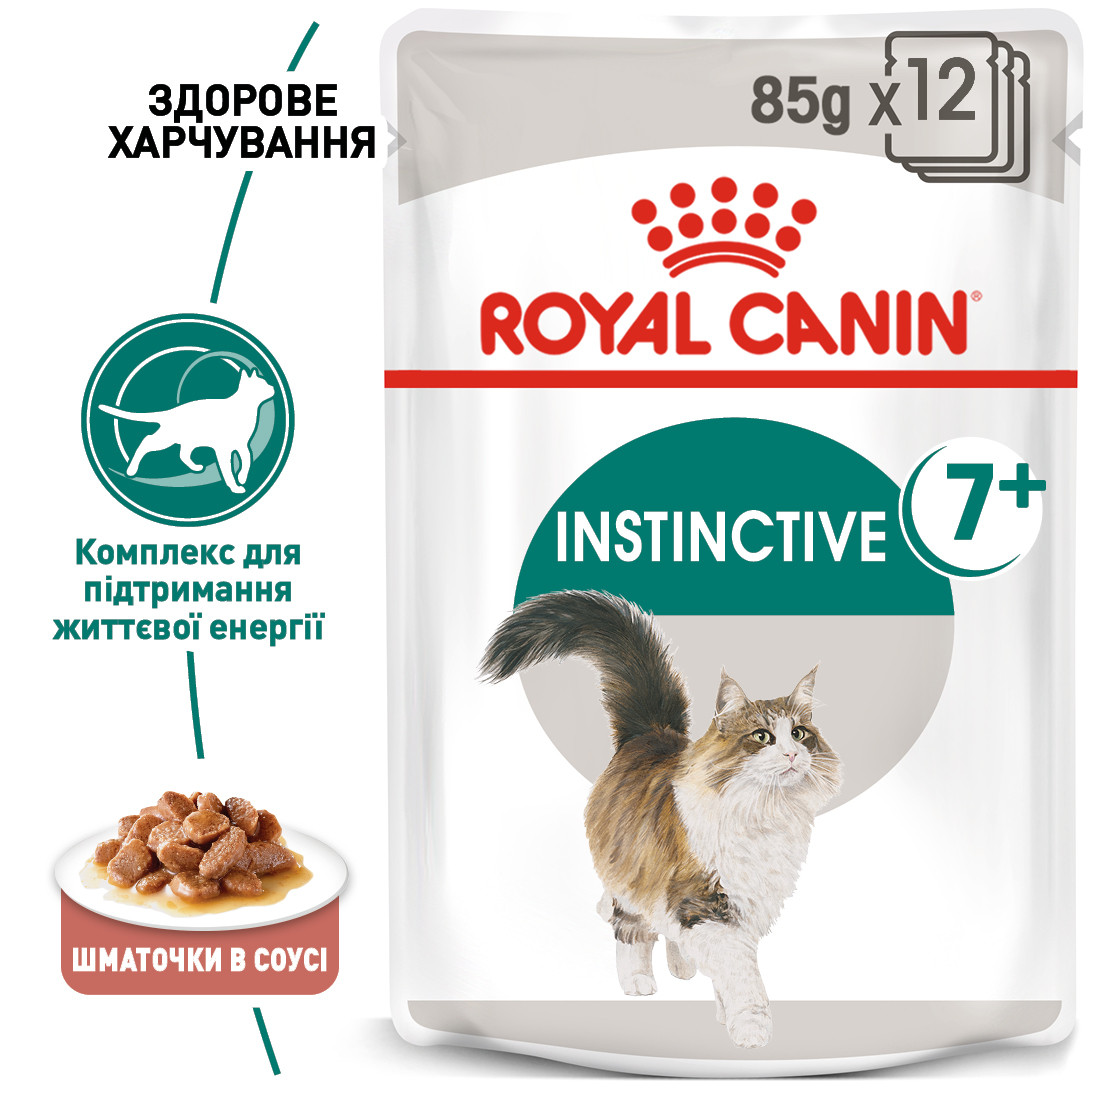 Вологий корм Royal Canin Instinctive 7+ для кішок, 0,085КГ 12 шт.